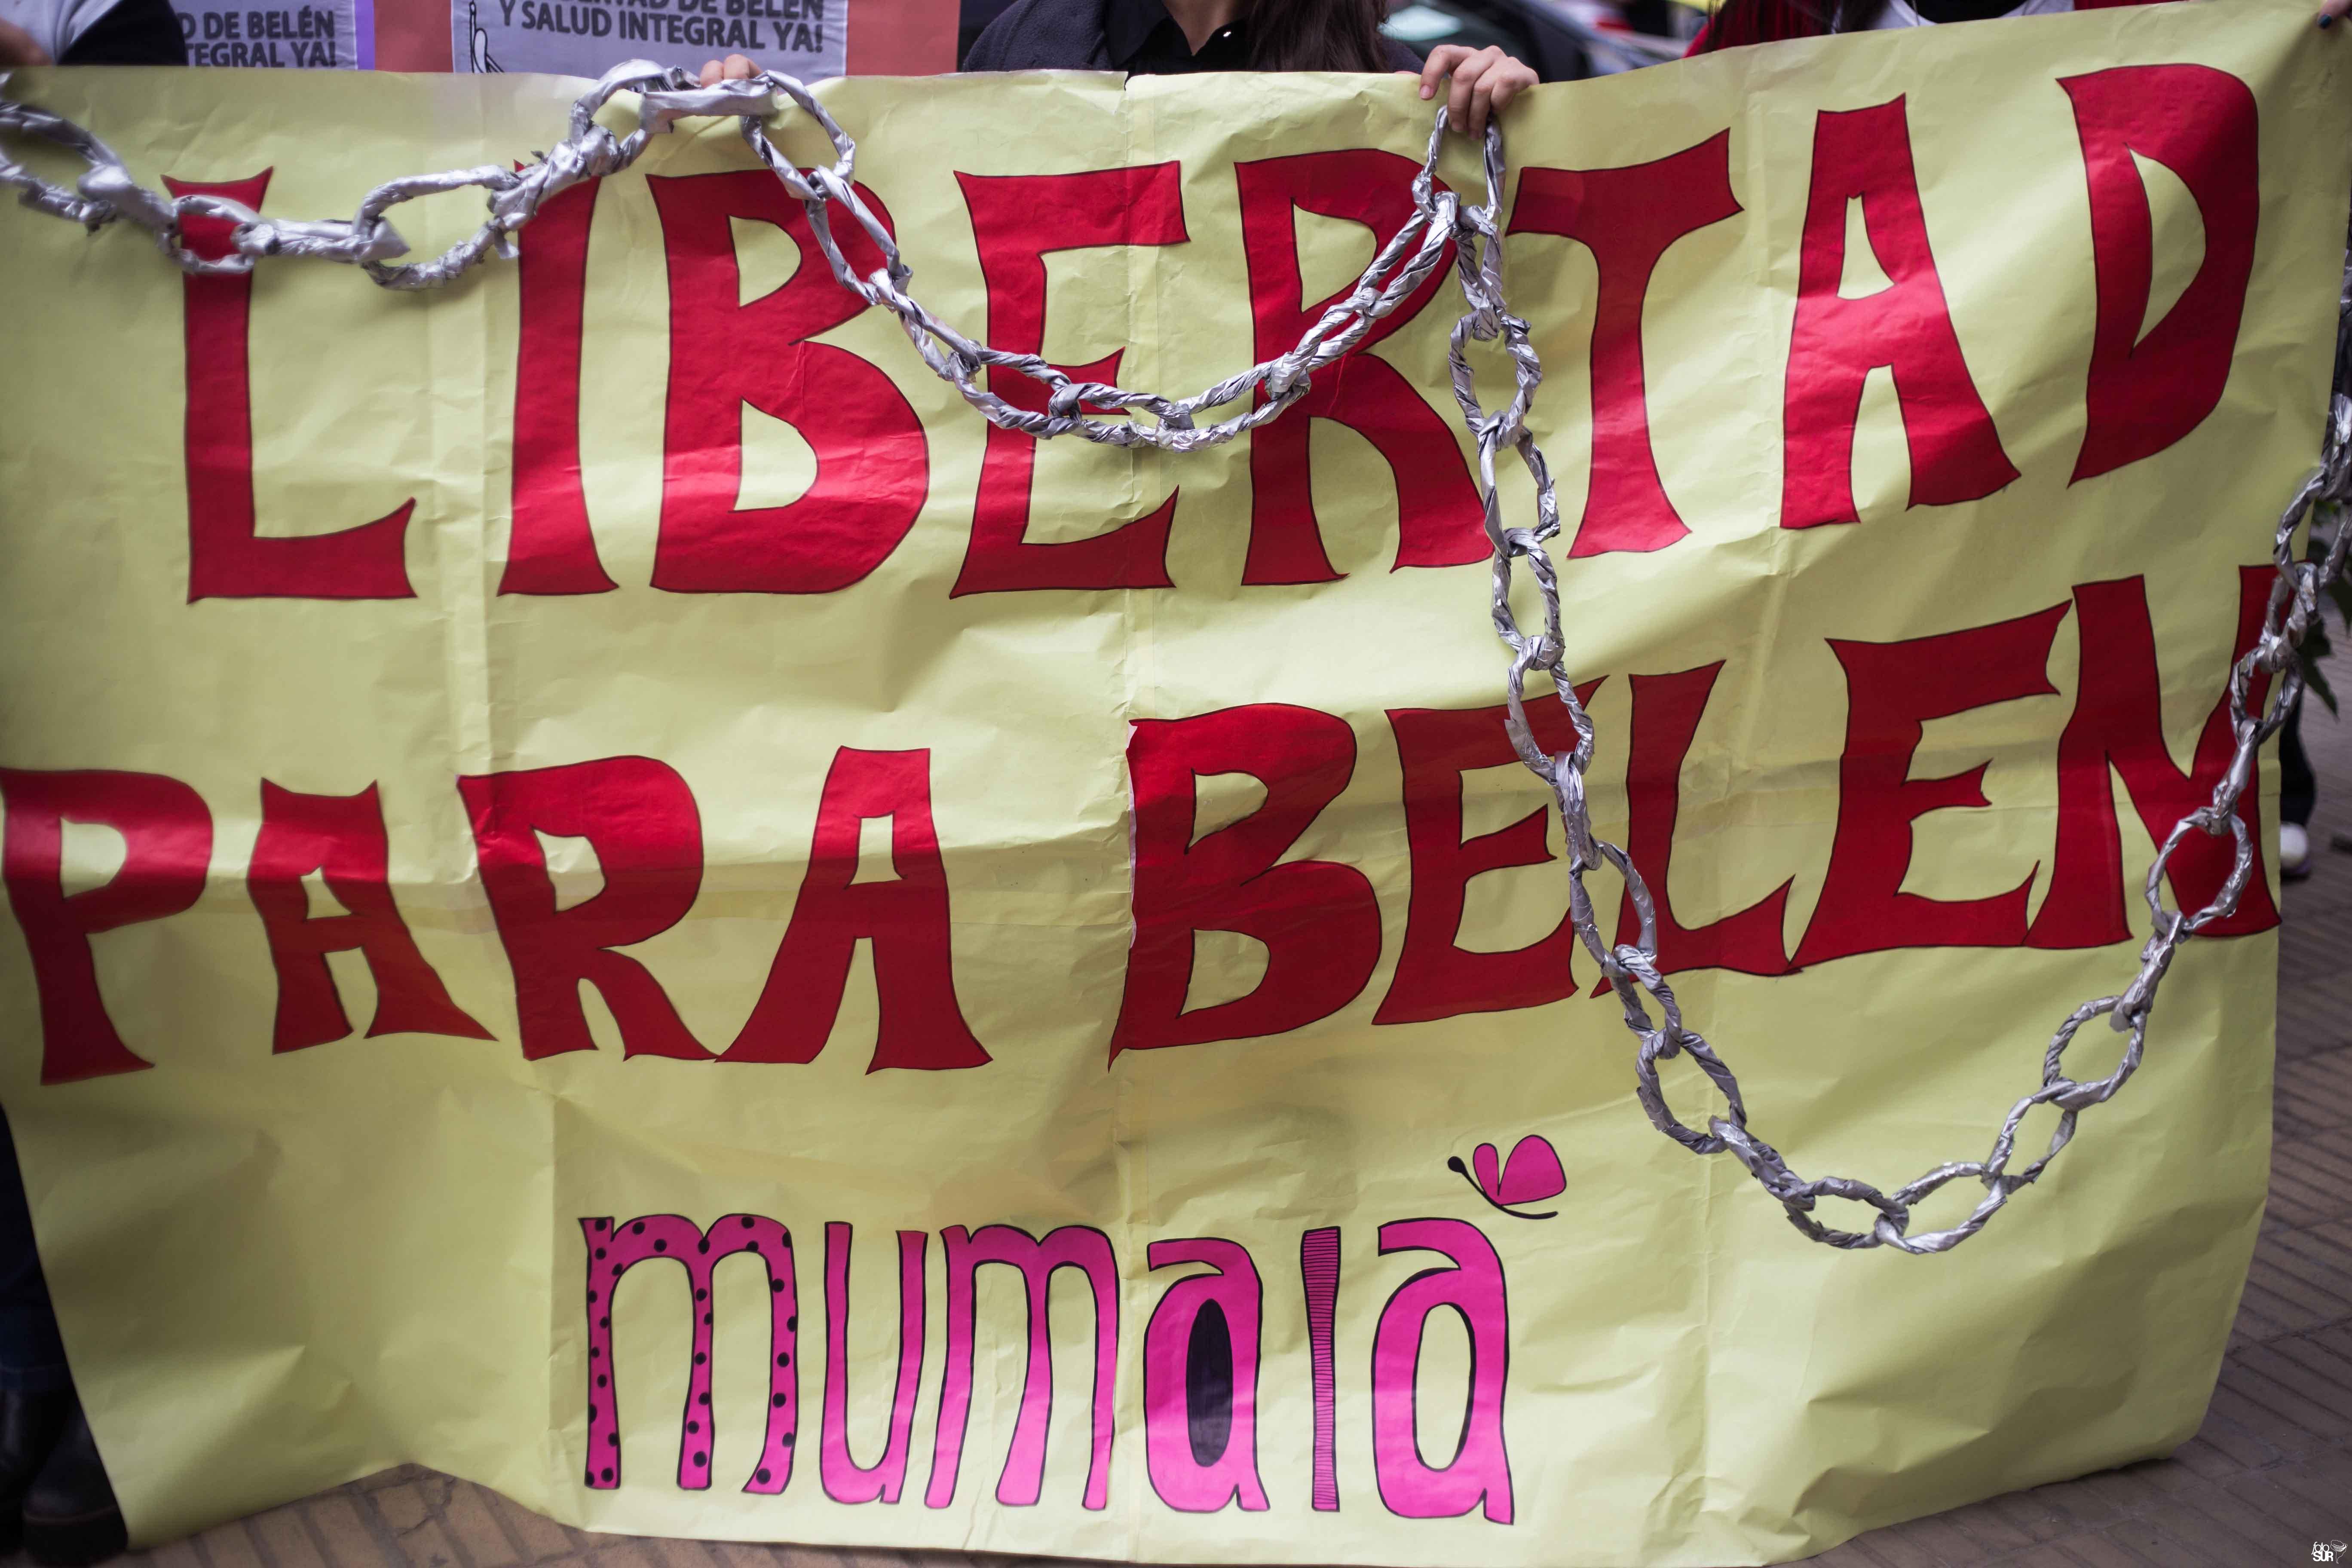 La historia de Belén, la joven argentina condenada a 8 años de cárcel por aborto